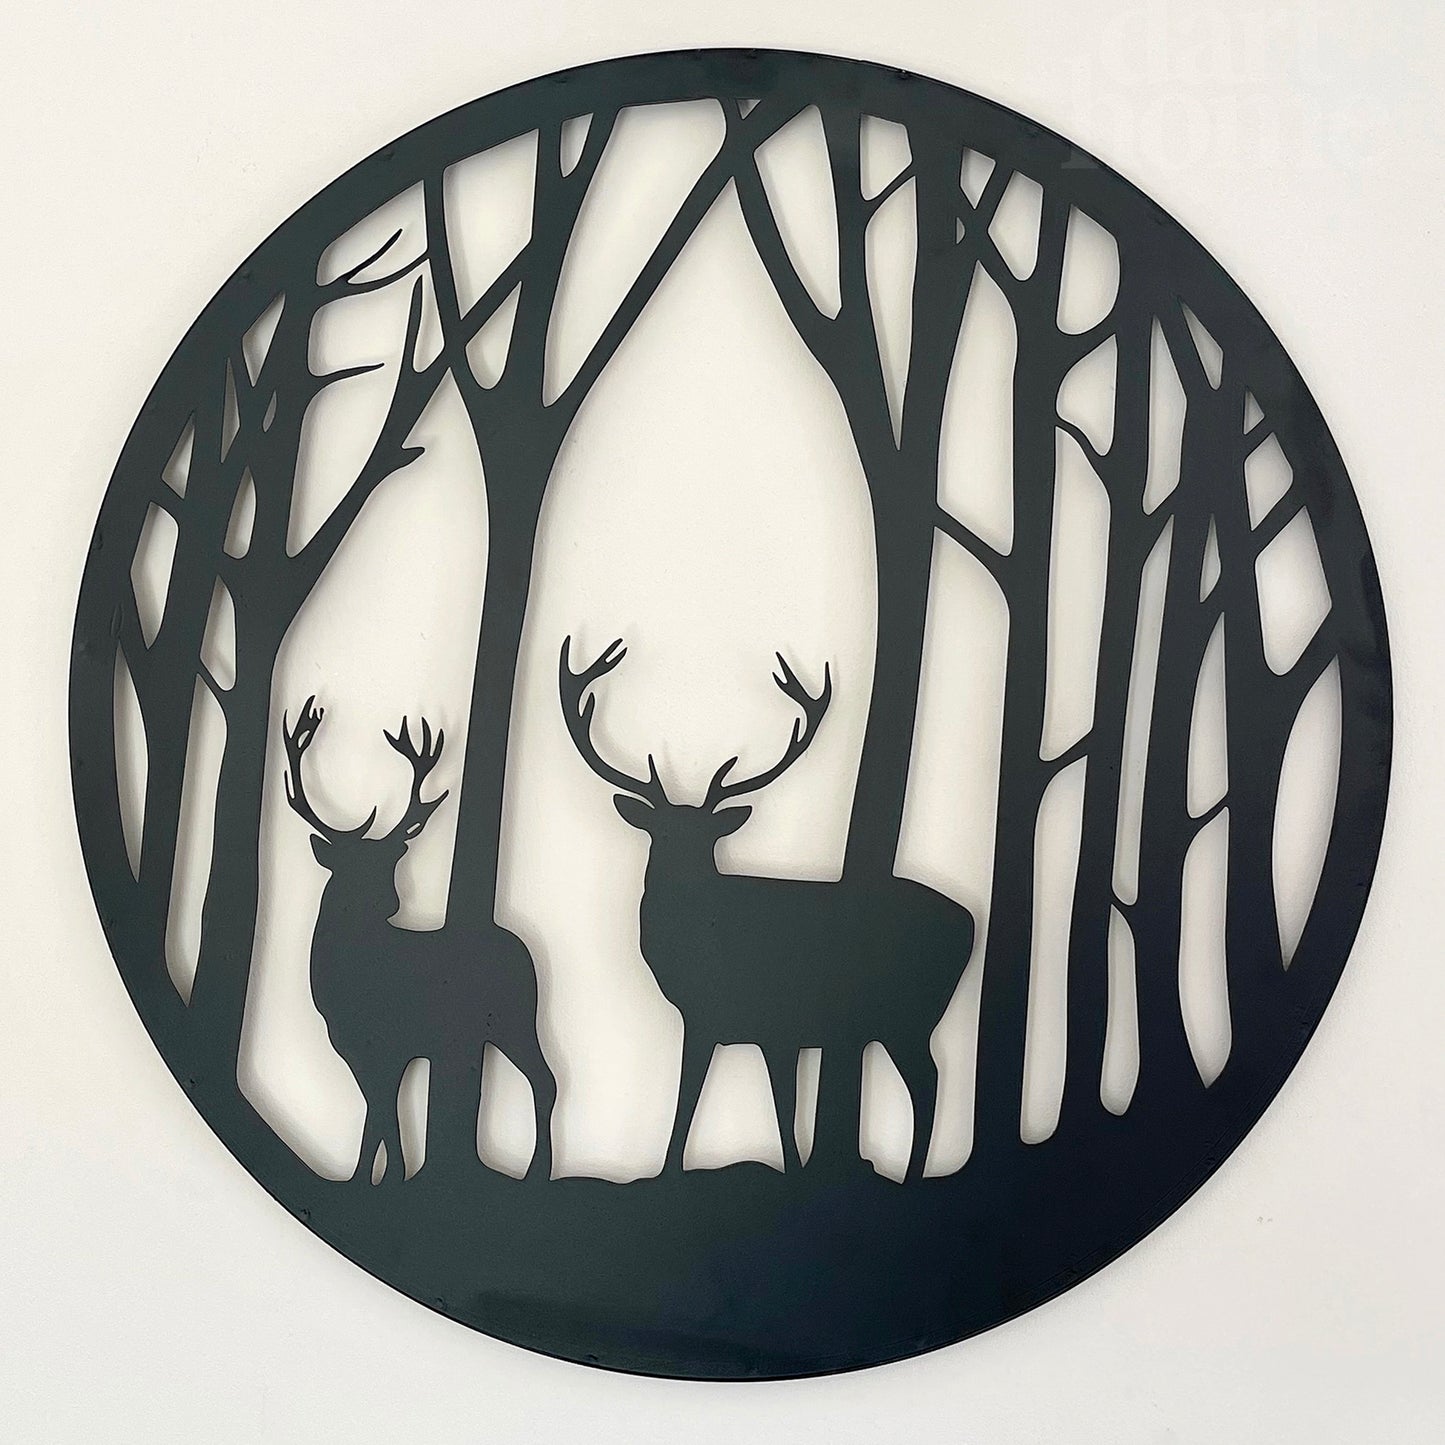 Schwarze Hirsche im Wald Silhouette Wandkunst